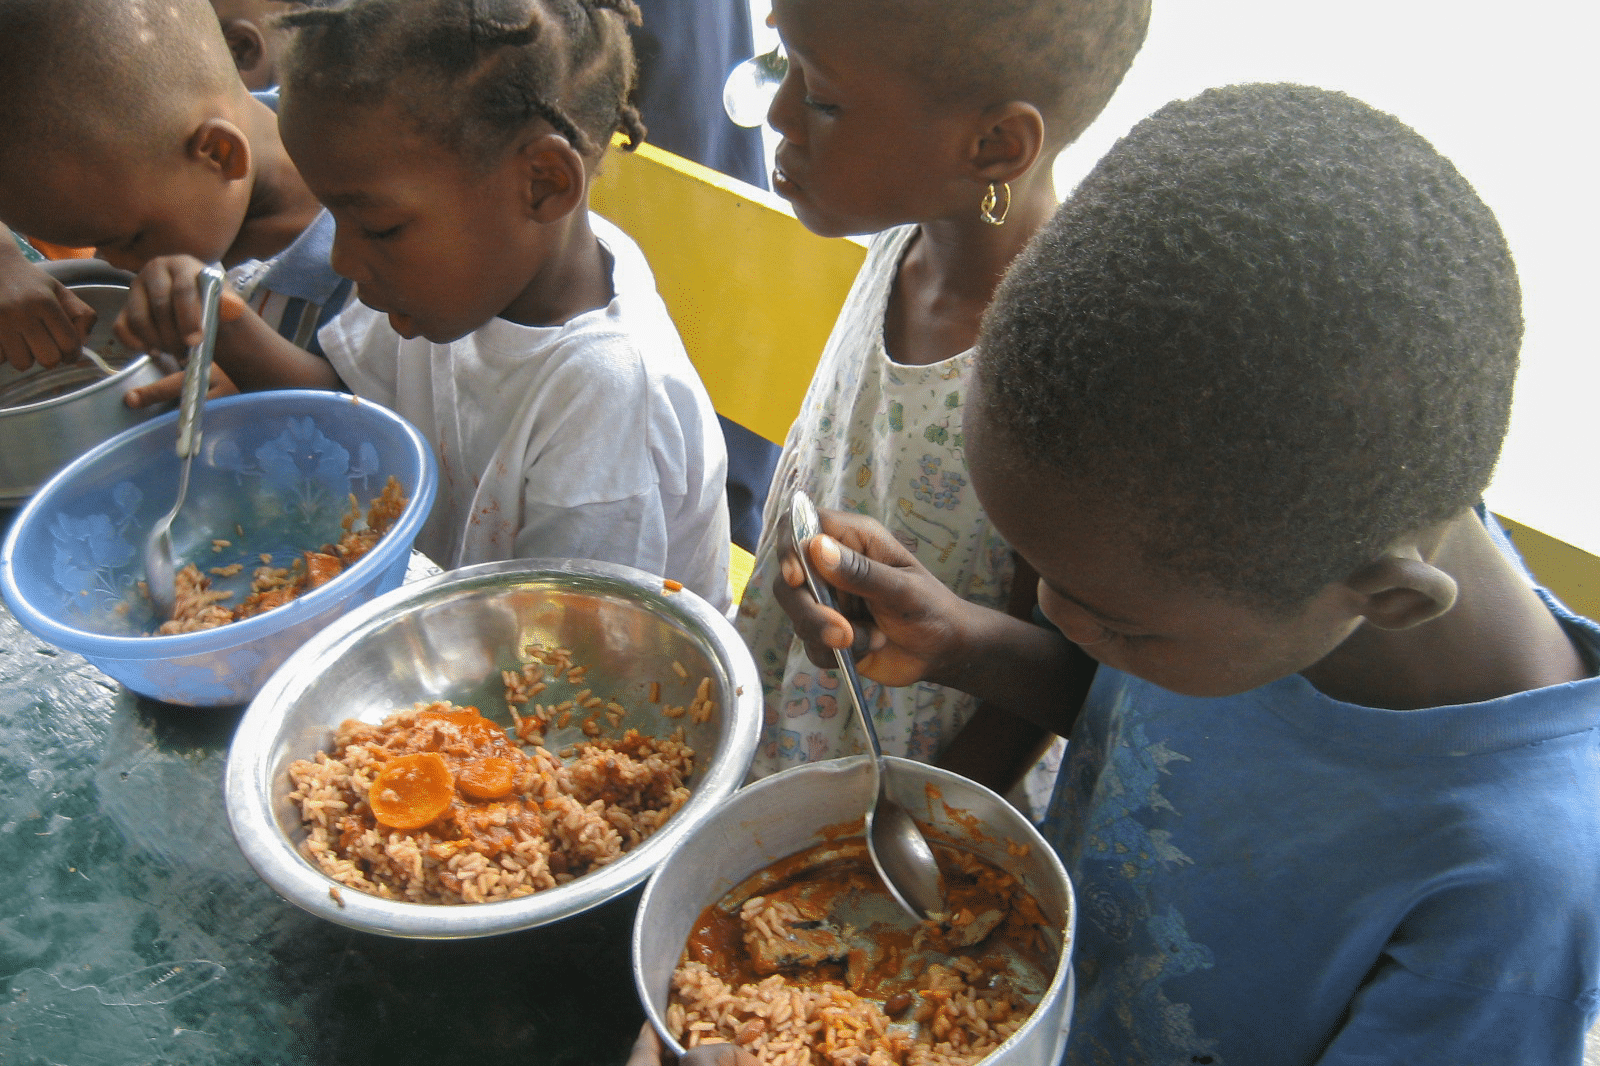 children eating - food feeding program in Haiti